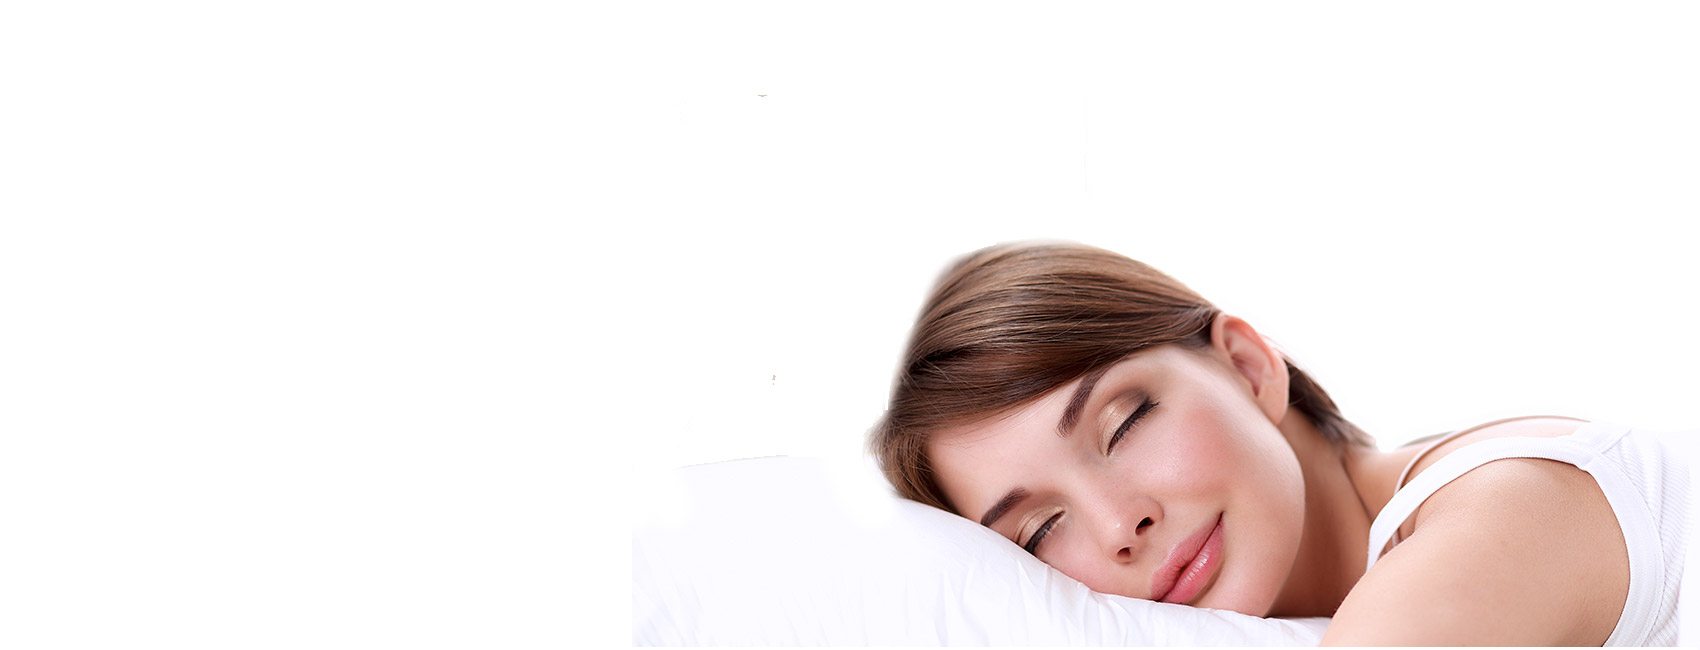 Sleep Apnea Treatment Newport Beach CA - Oral Appliance - CPAP